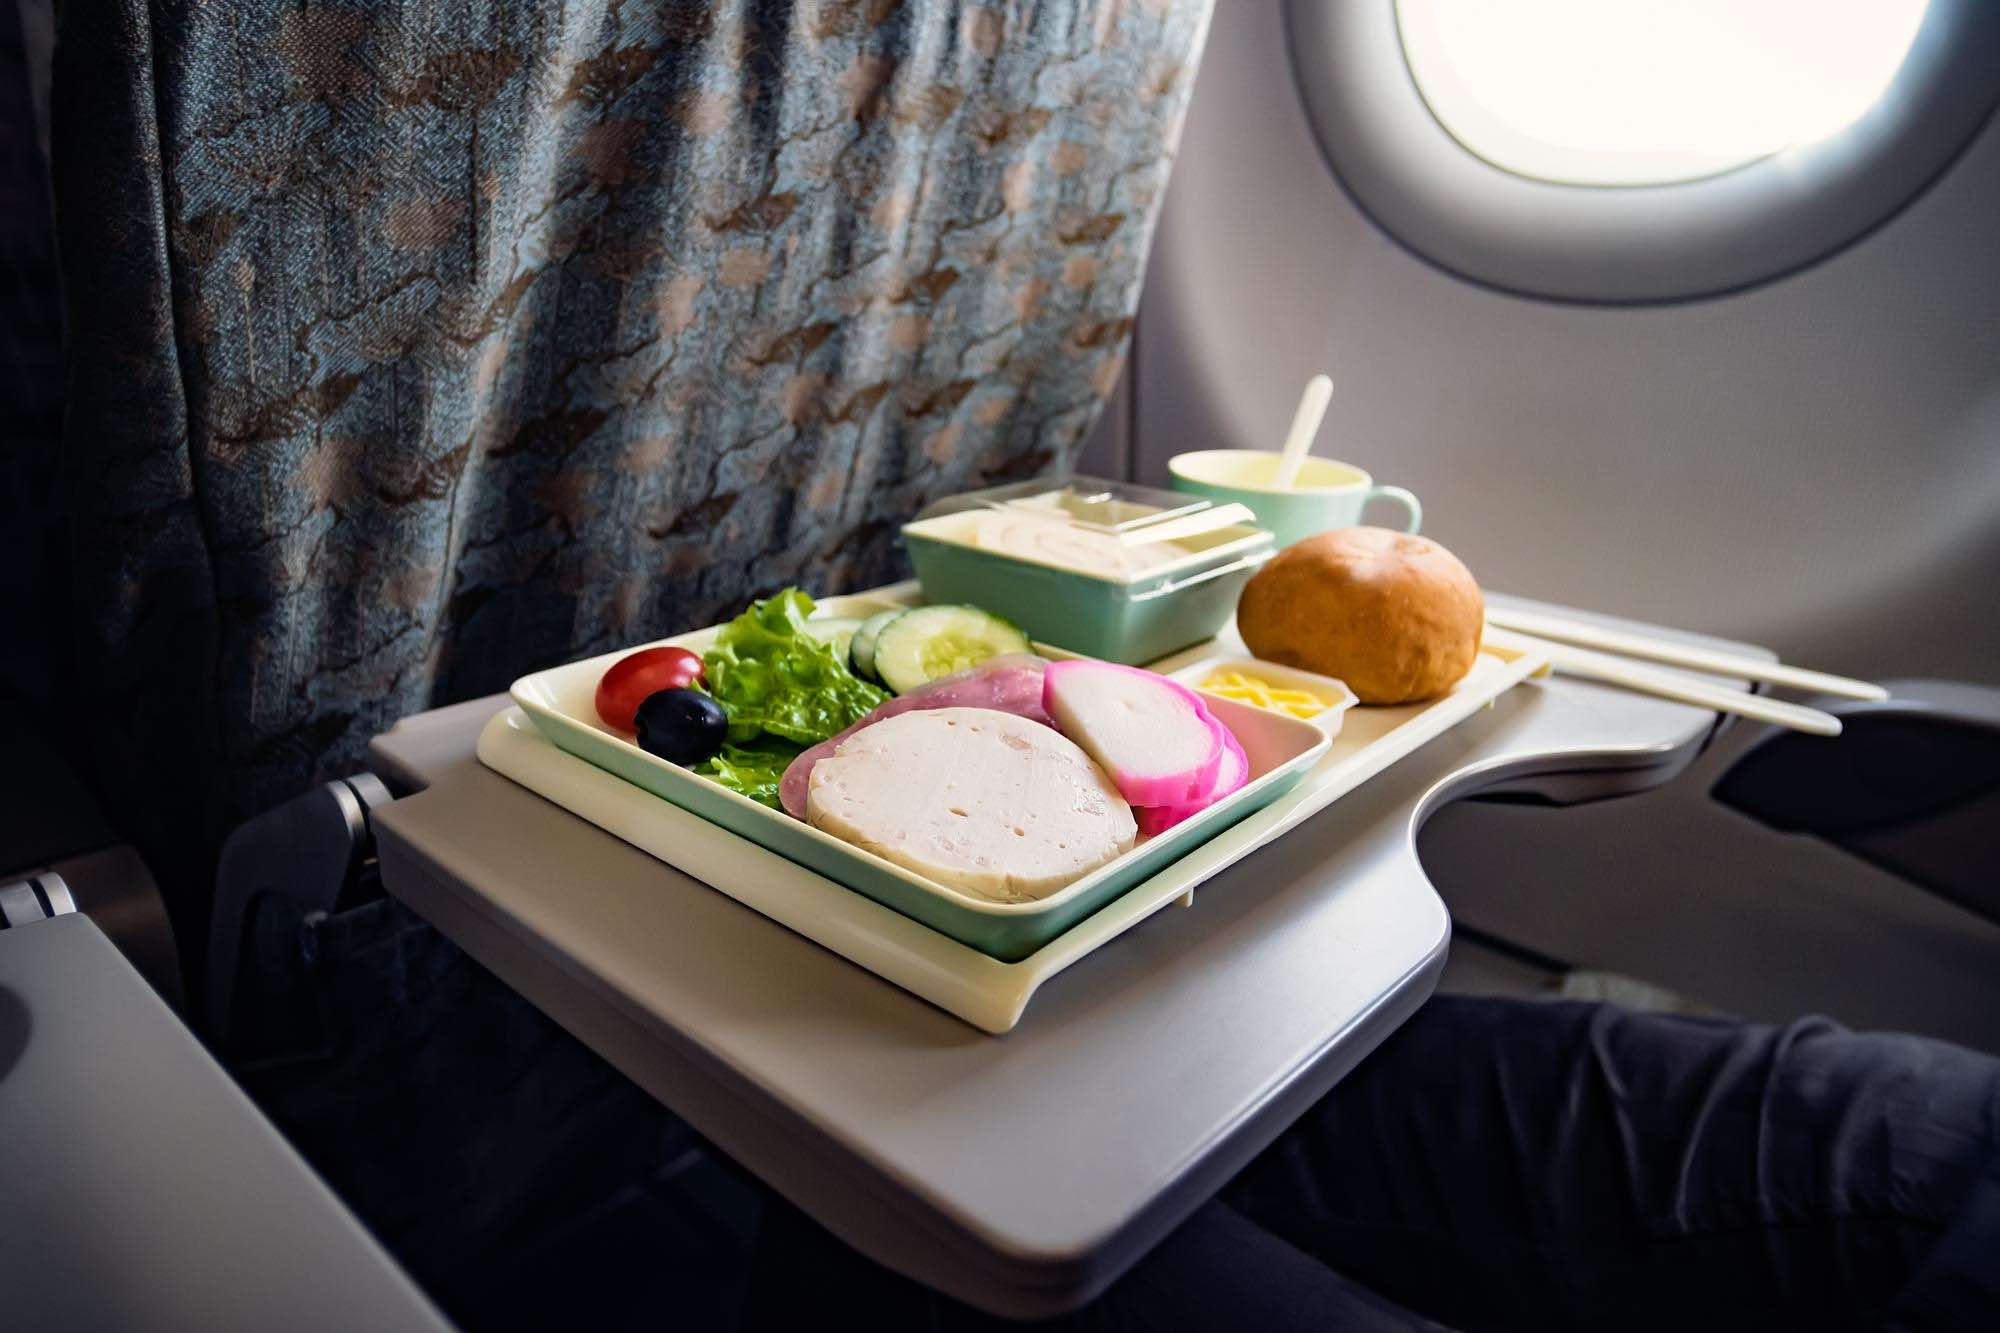 الذكاء الاصطناعي يدعم شركات الطيران في إعداد وجبات تناسب احتياجات الركاب